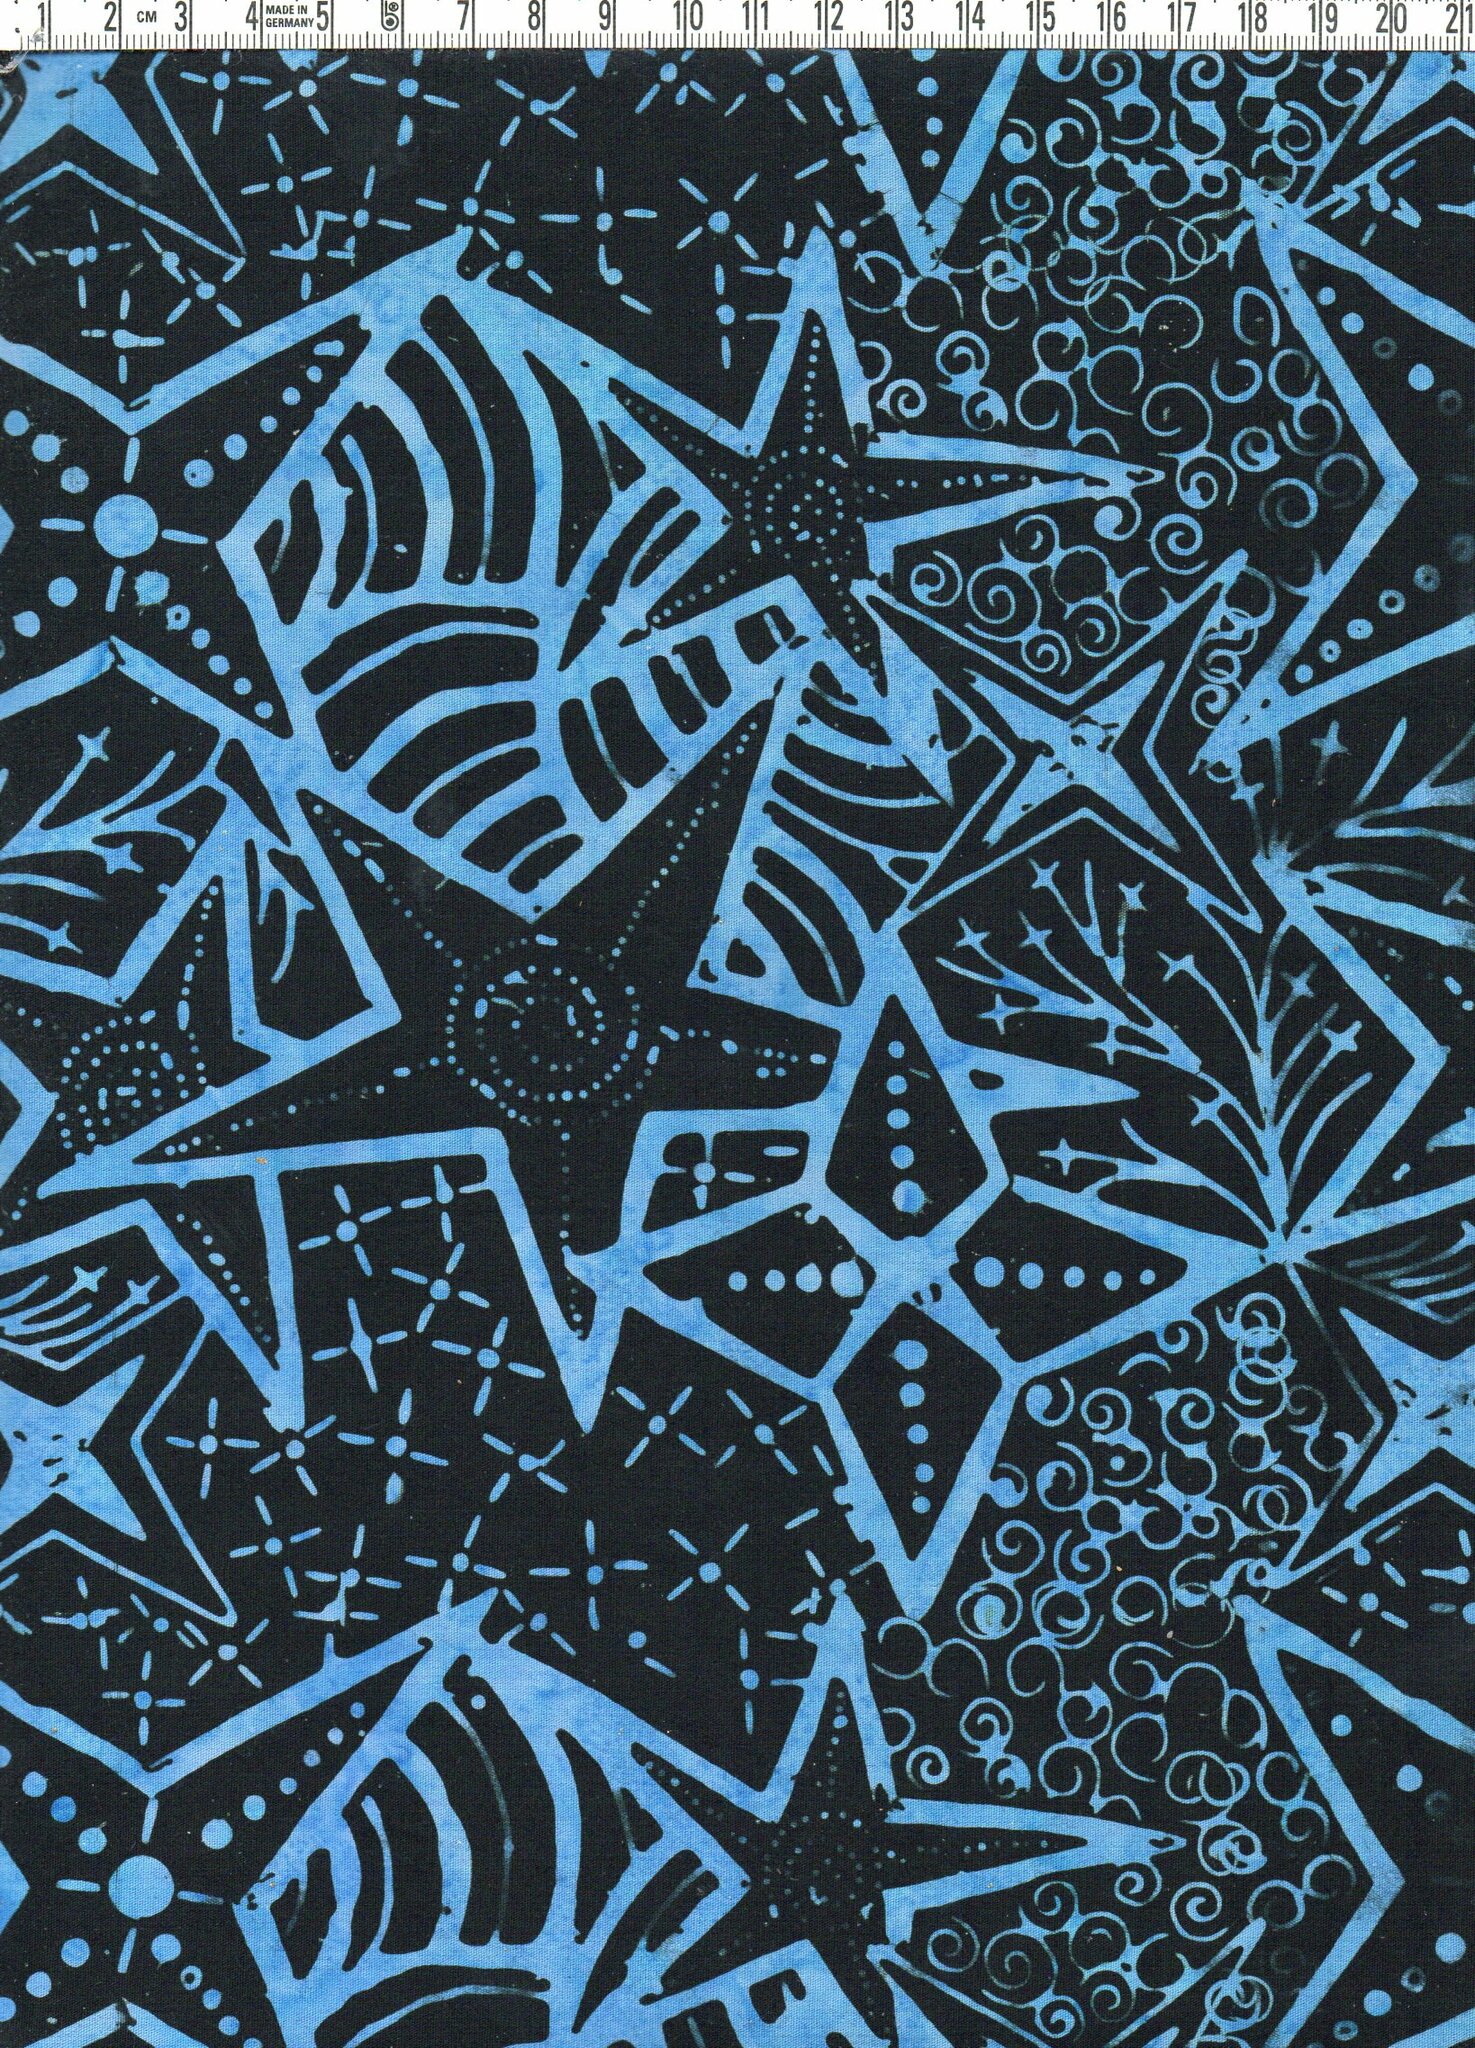 Superdesignade stjärnor i blåaste blått på svart himmel. Batik bomull. Ca 110 cm brett.